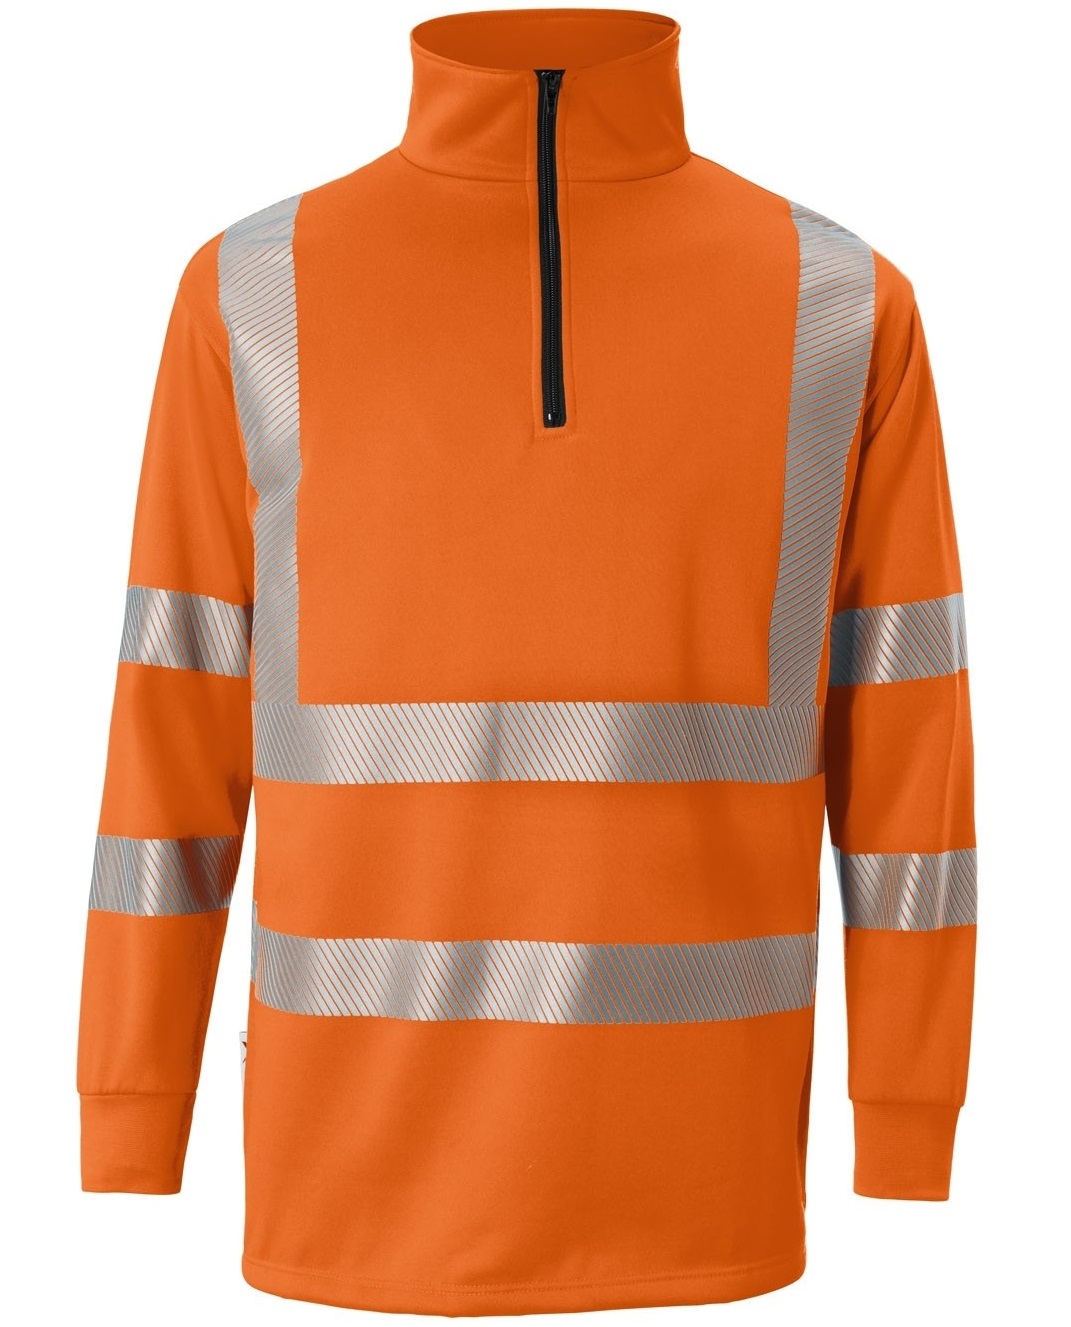 KÜBLER-Warnschutz, Warn-Zip-Sweater, REFLECTIQ, PSA 2, ca.300g/m², warnorange
